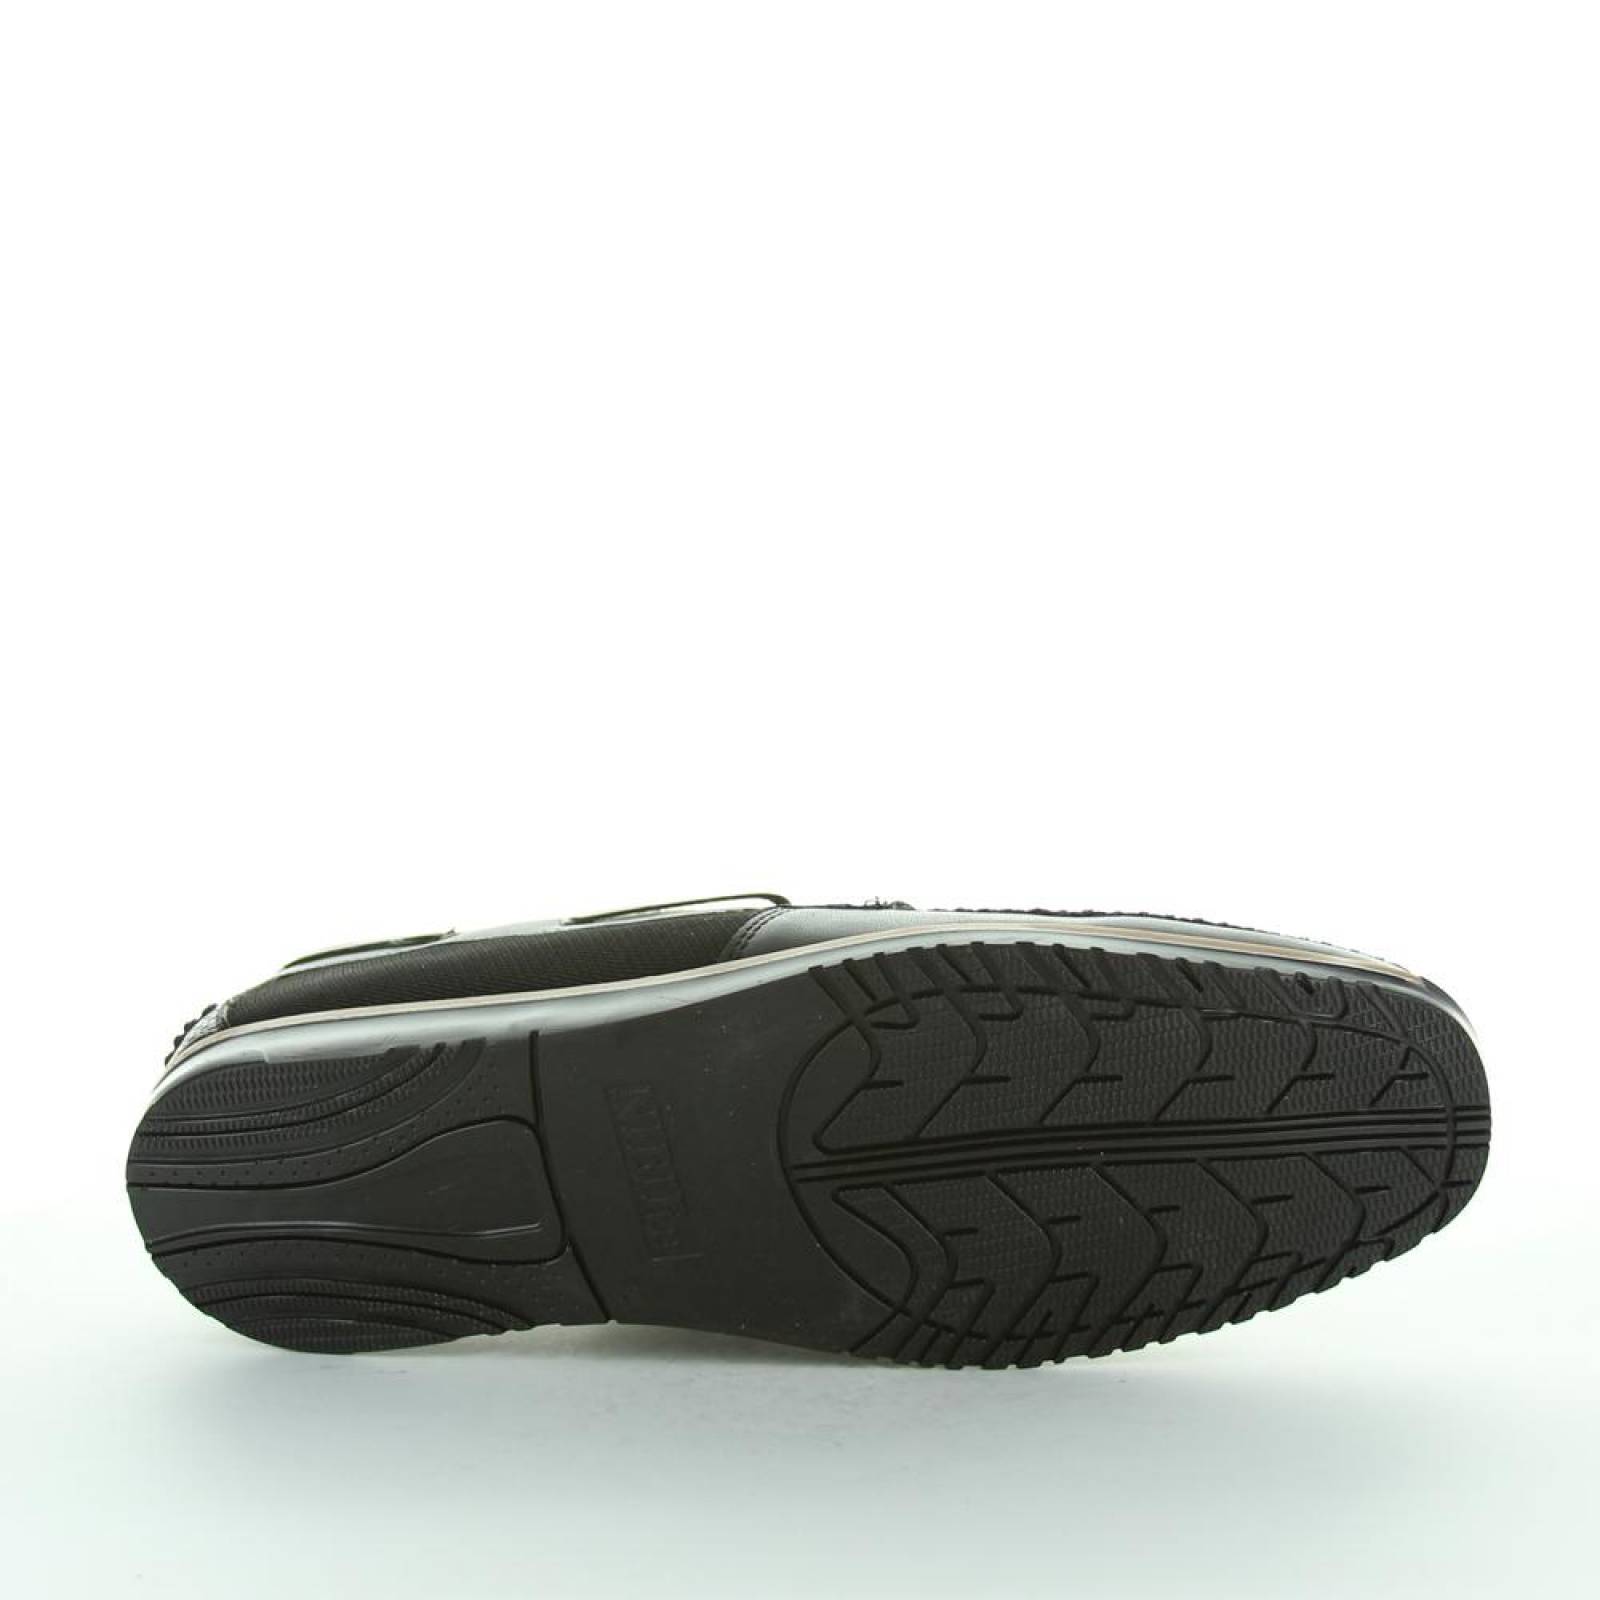 Zapato Casual Hombre Nibiru Negro 21703101 Tacto Piel 